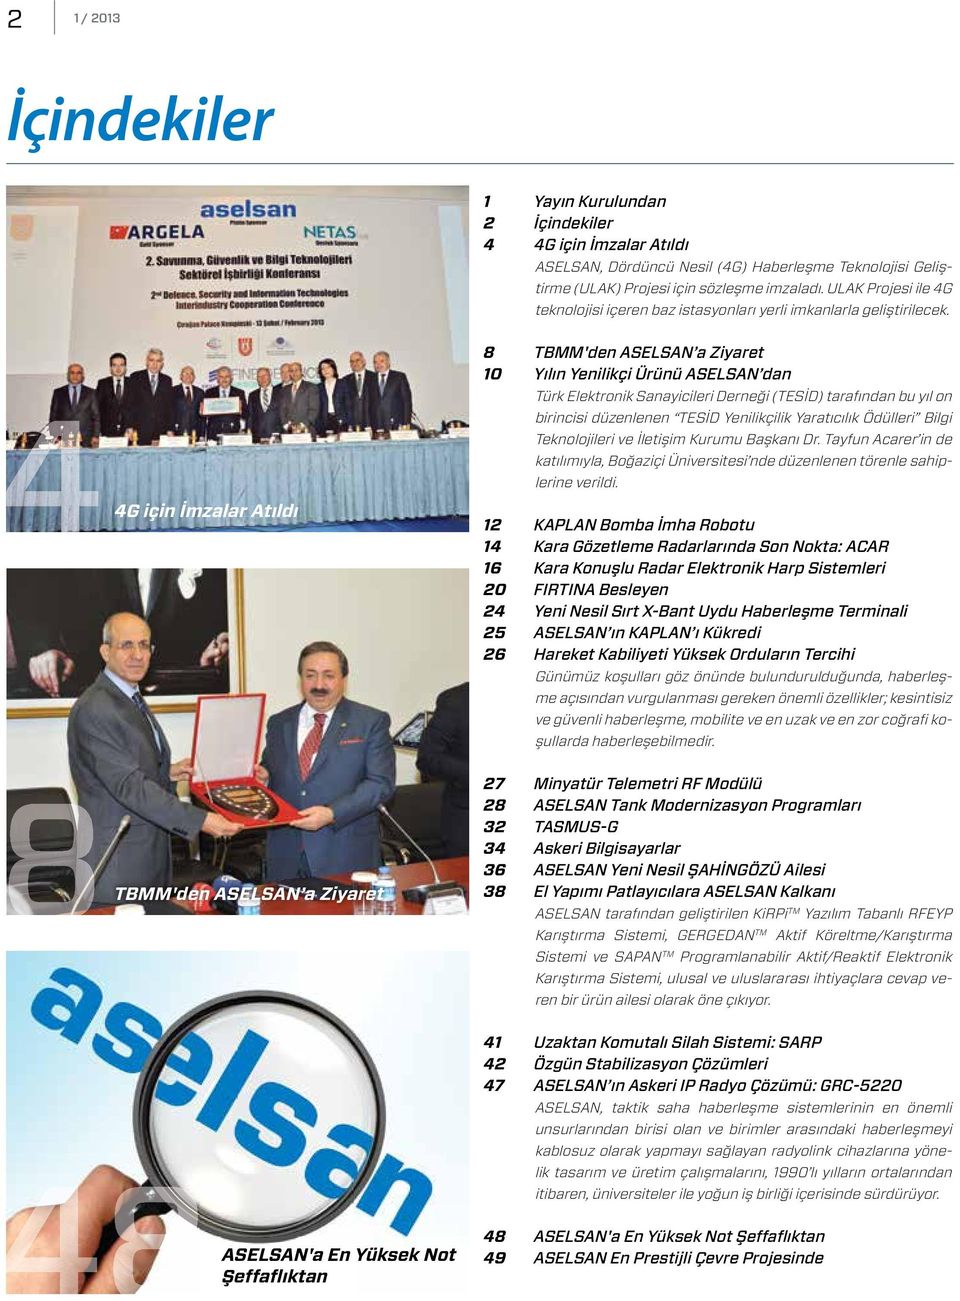 4 4G için İmzalar Atıldı 8 TBMM'den ASELSAN a Ziyaret 10 Yılın Yenilikçi Ürünü ASELSAN dan Türk Elektronik Sanayicileri Derneği (TESİD) tarafından bu yıl on birincisi düzenlenen TESİD Yenilikçilik